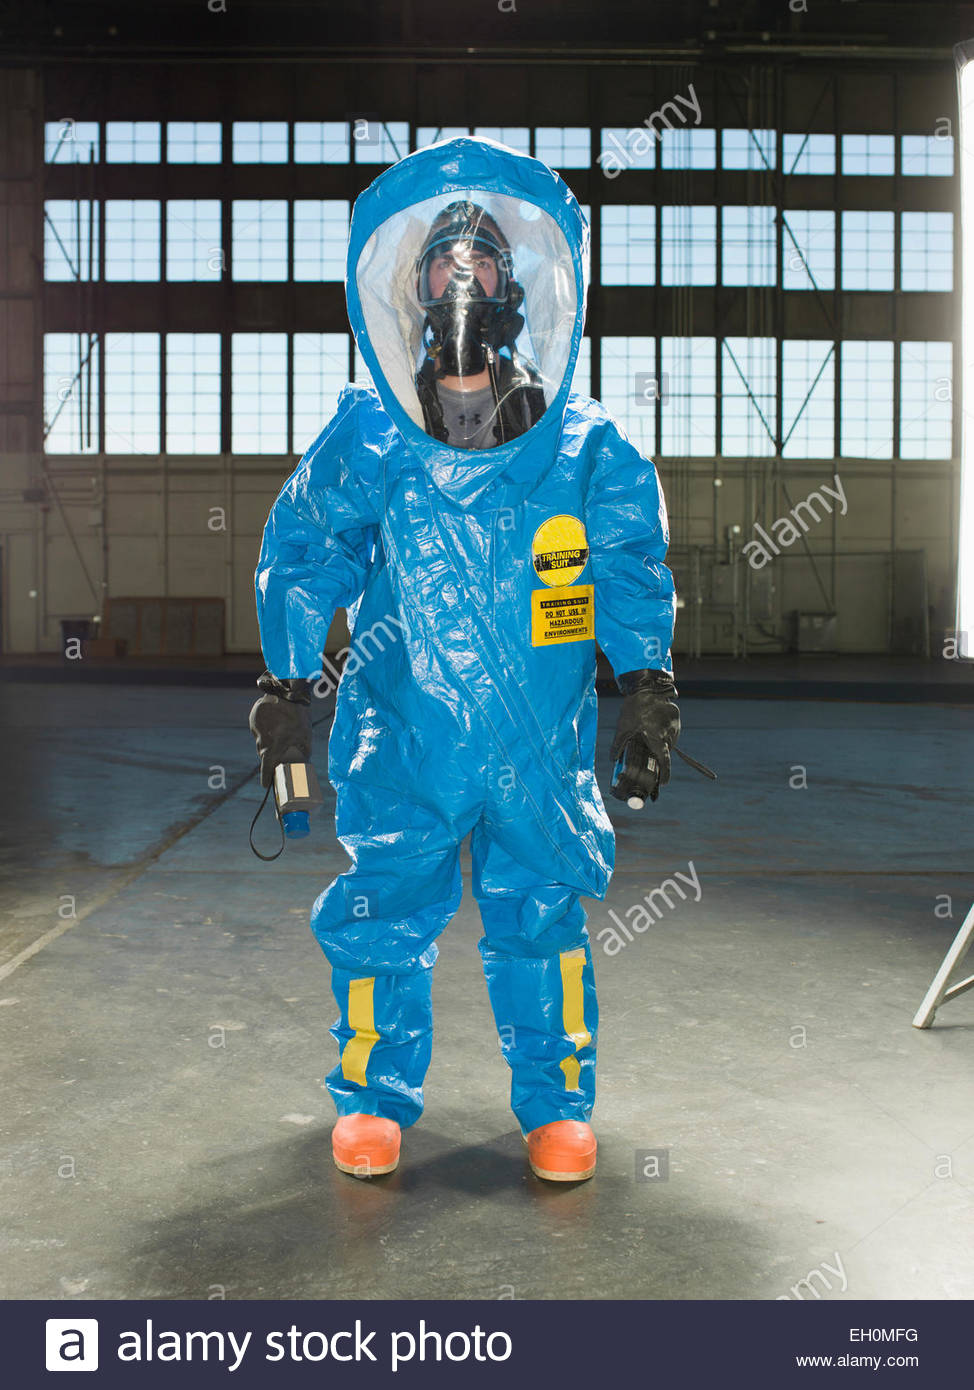 un-guardia-nacional-viste-un-traje-de-radiacion-nuclear-durante-el-entrenamiento-en-una-base-a...jpg